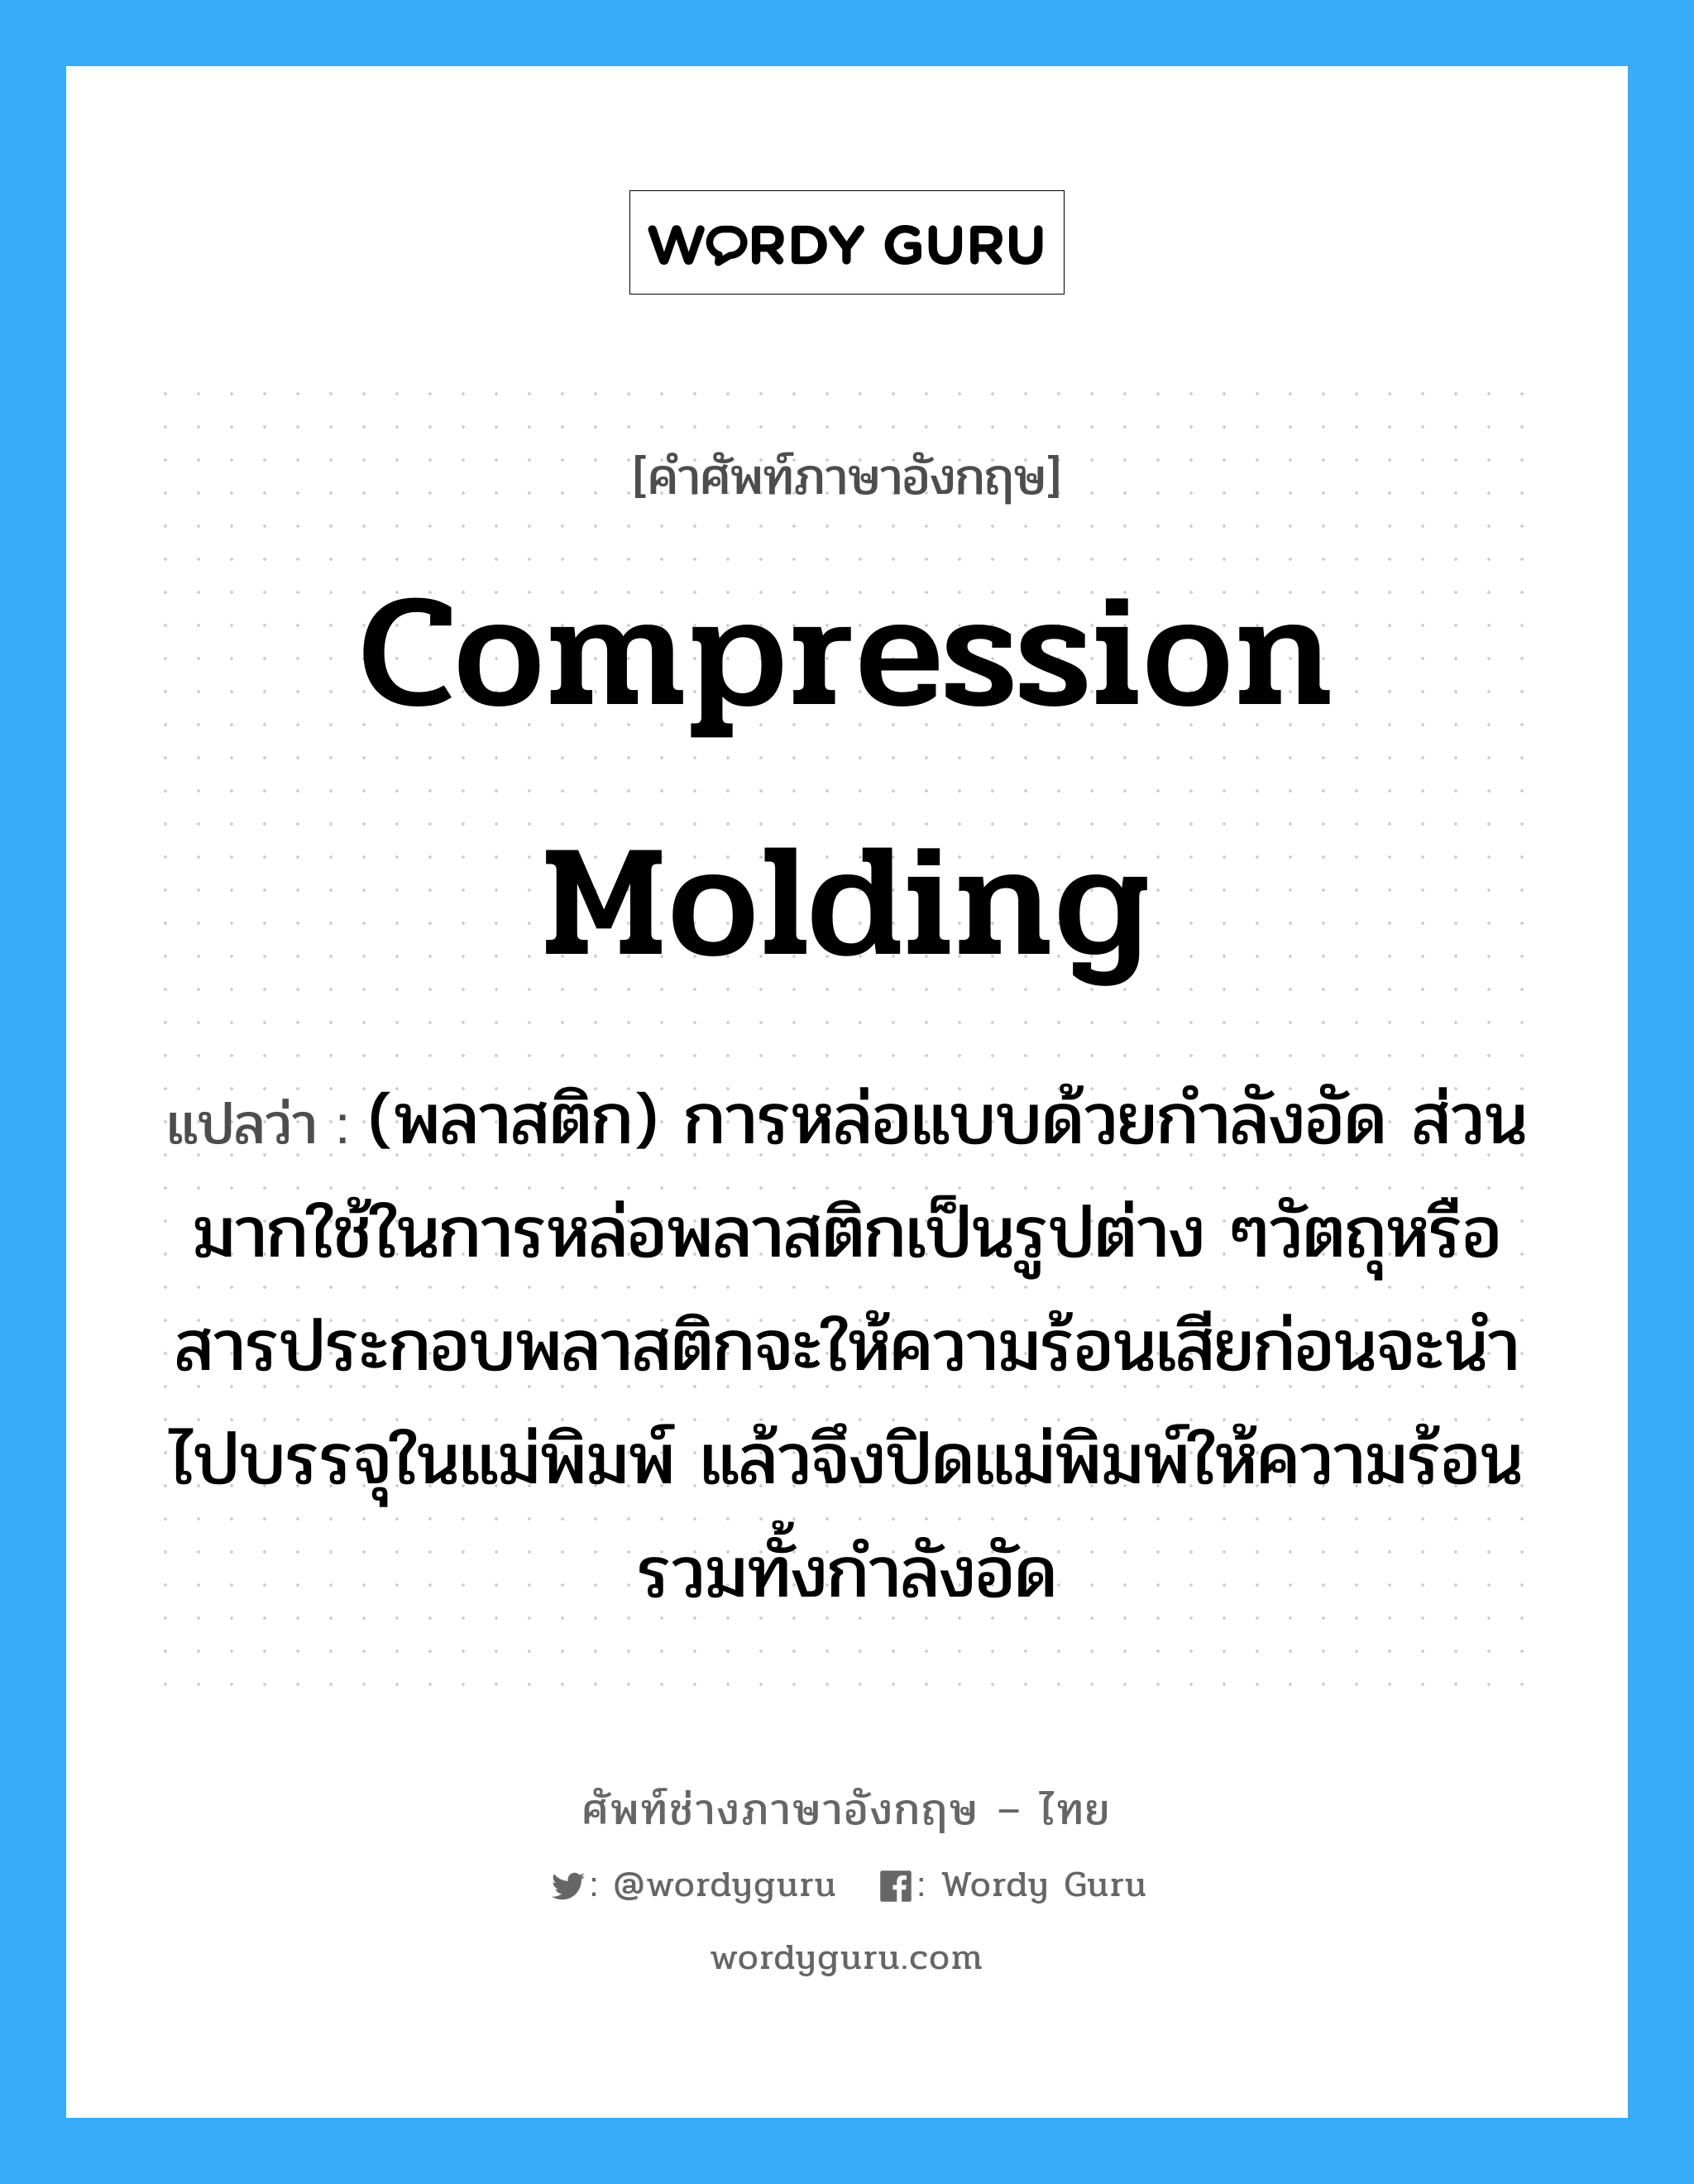 compression molding แปลว่า?, คำศัพท์ช่างภาษาอังกฤษ - ไทย compression molding คำศัพท์ภาษาอังกฤษ compression molding แปลว่า (พลาสติก) การหล่อแบบด้วยกำลังอัด ส่วนมากใช้ในการหล่อพลาสติกเป็นรูปต่าง ๆวัตถุหรือสารประกอบพลาสติกจะให้ความร้อนเสียก่อนจะนำไปบรรจุในแม่พิมพ์ แล้วจึงปิดแม่พิมพ์ให้ความร้อนรวมทั้งกำลังอัด